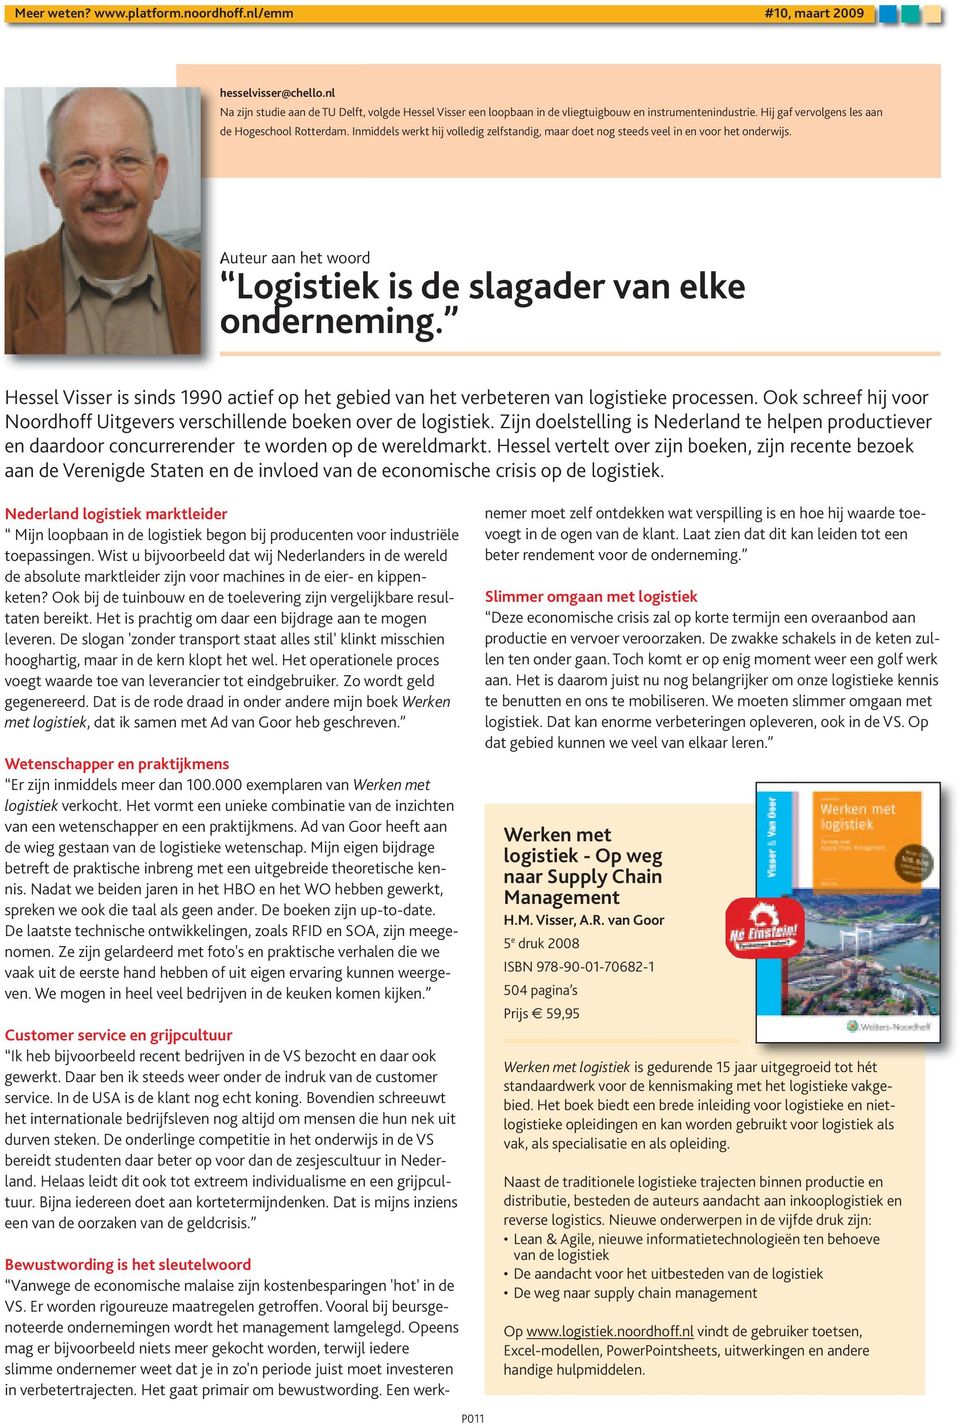 Hessel Visser is sinds 1990 actief op het gebied van het verbeteren van logistieke processen. Ook schreef hij voor Noordhoff Uitgevers verschillende boeken over de logistiek.